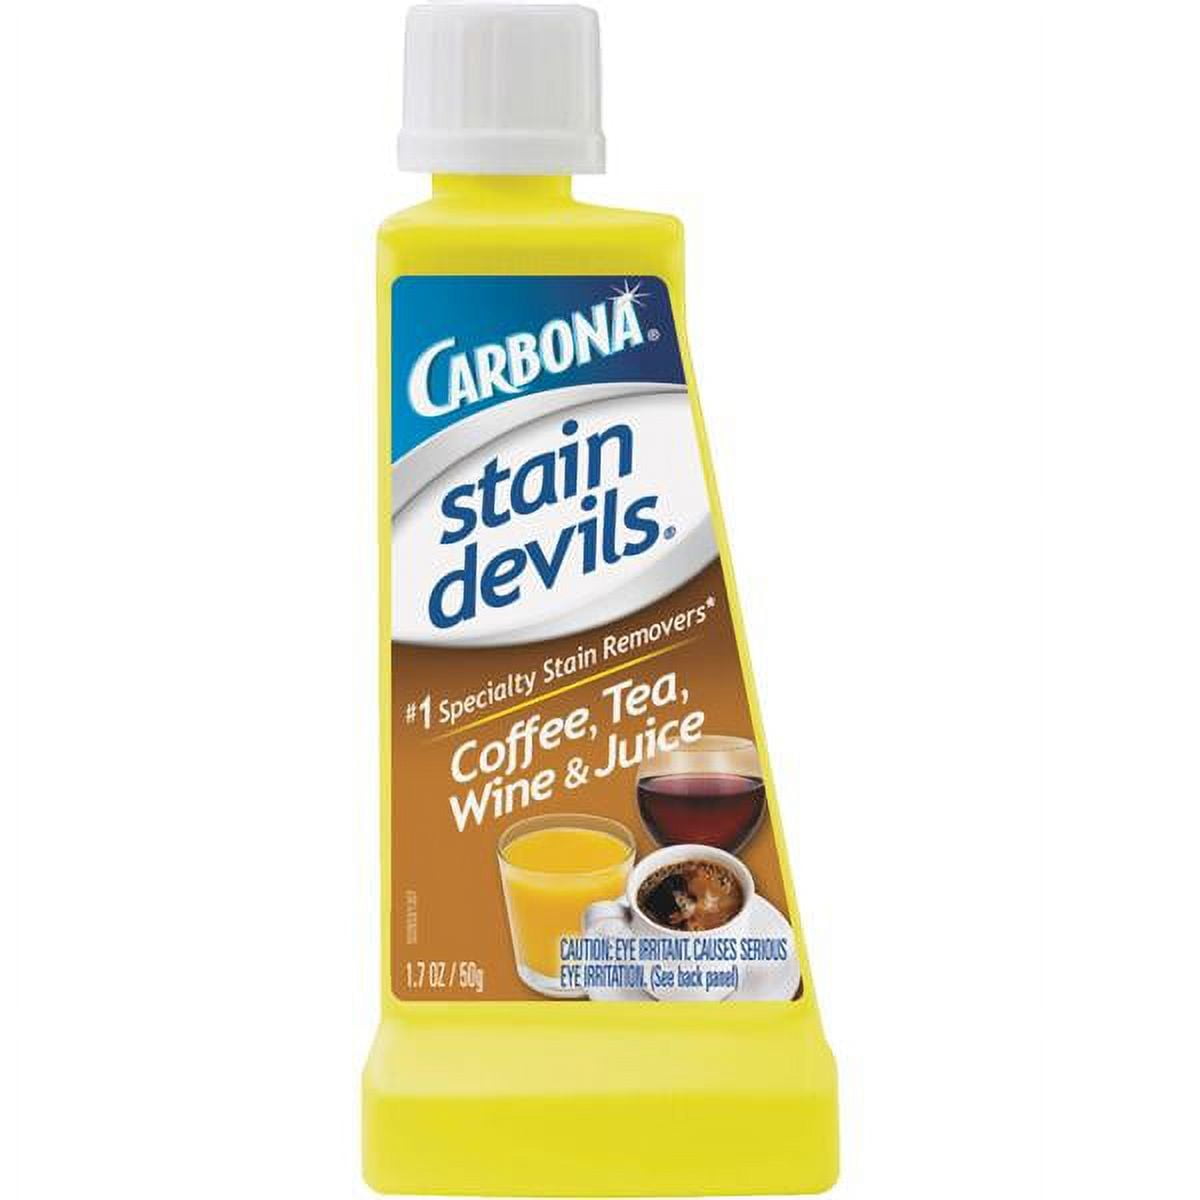 Carbona Stain Devils #8 Wine, Tea, Coffee & Juice - 1.7 Fl Oz (Pack of 2) 